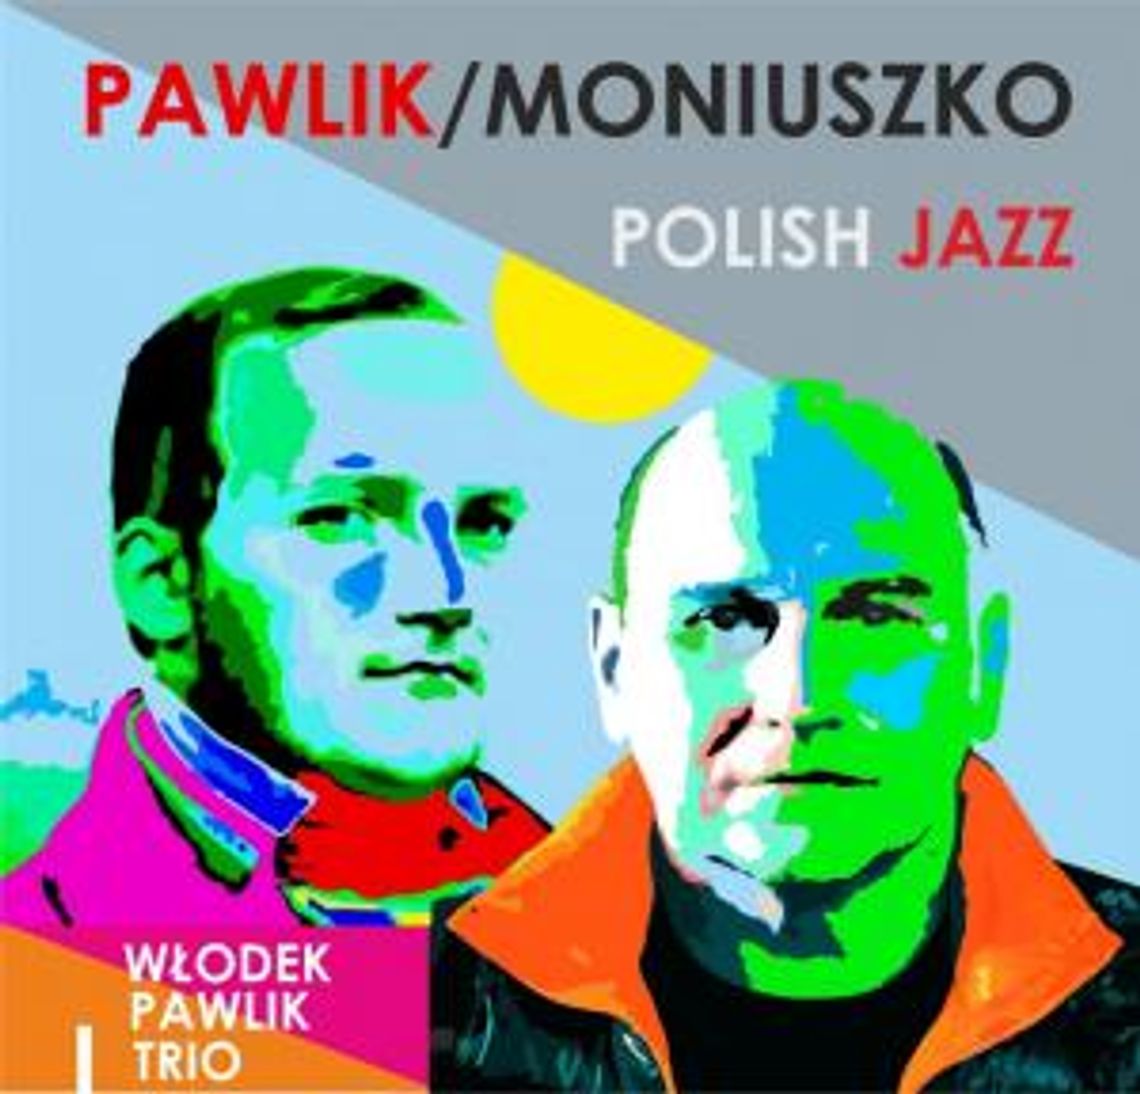 9. Międzynarodowy Festiwal Muzyczny NDI Sopot Classic| Pawlik Moniuszko Polish Jazz